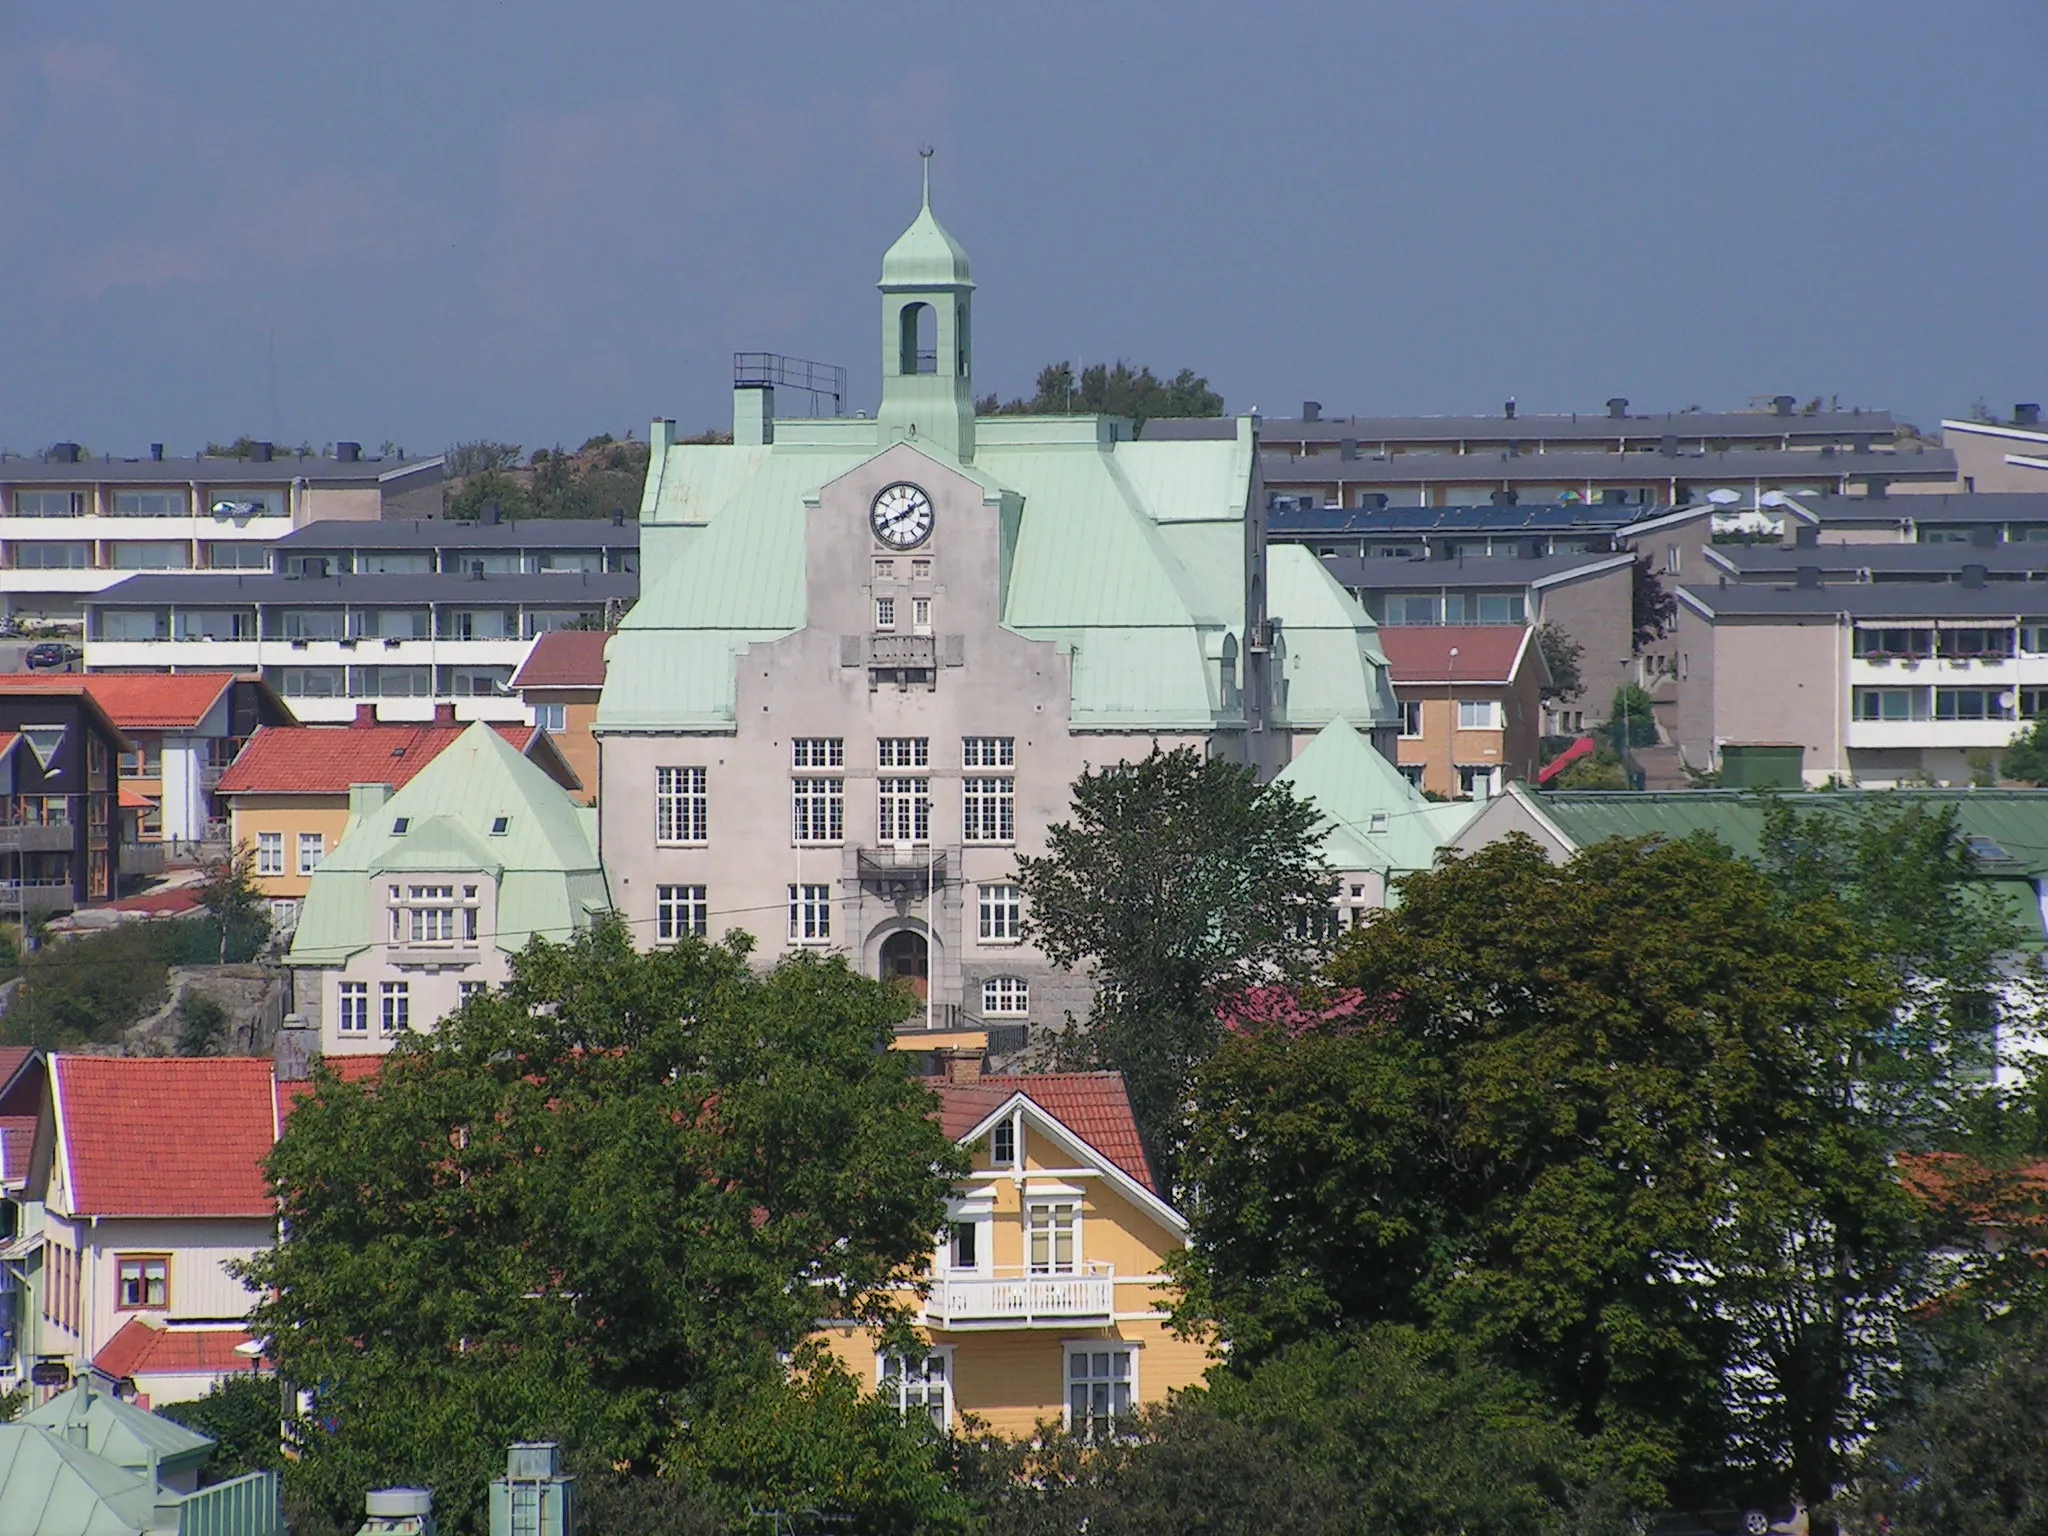 Image of Strömstad